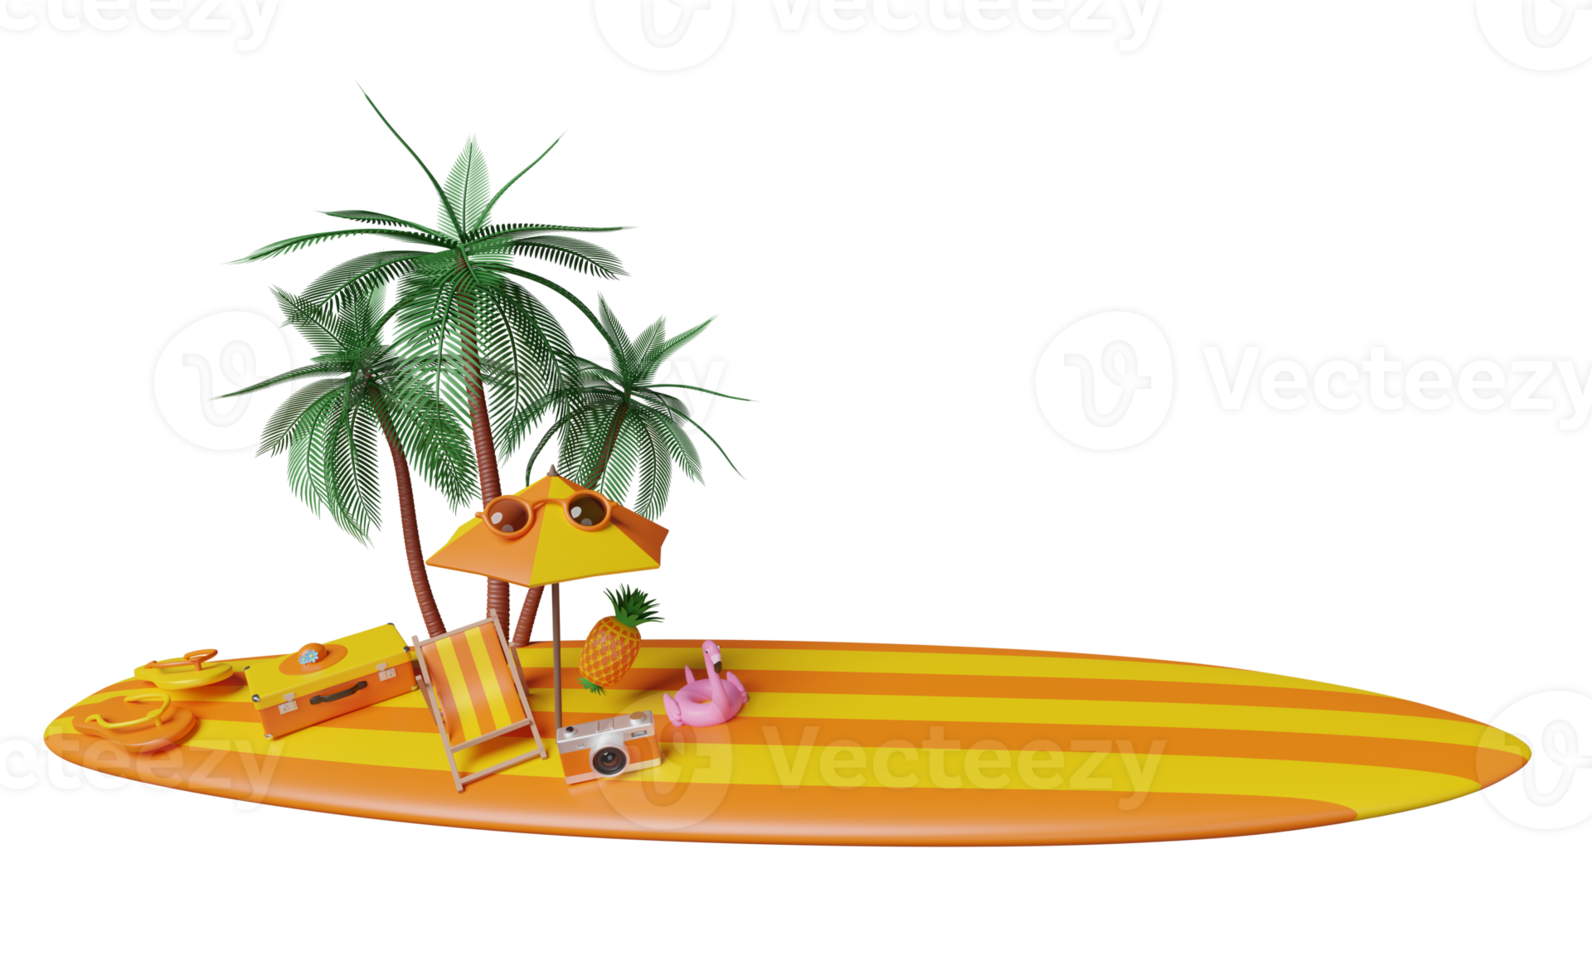 voyage d'été avec valise orange, chaise de plage, parapluie, lunettes de soleil, planche de surf, flamant rose gonflable, palmier, sandales, chapeau, appareil photo isolé. concept illustration 3d ou rendu 3d png